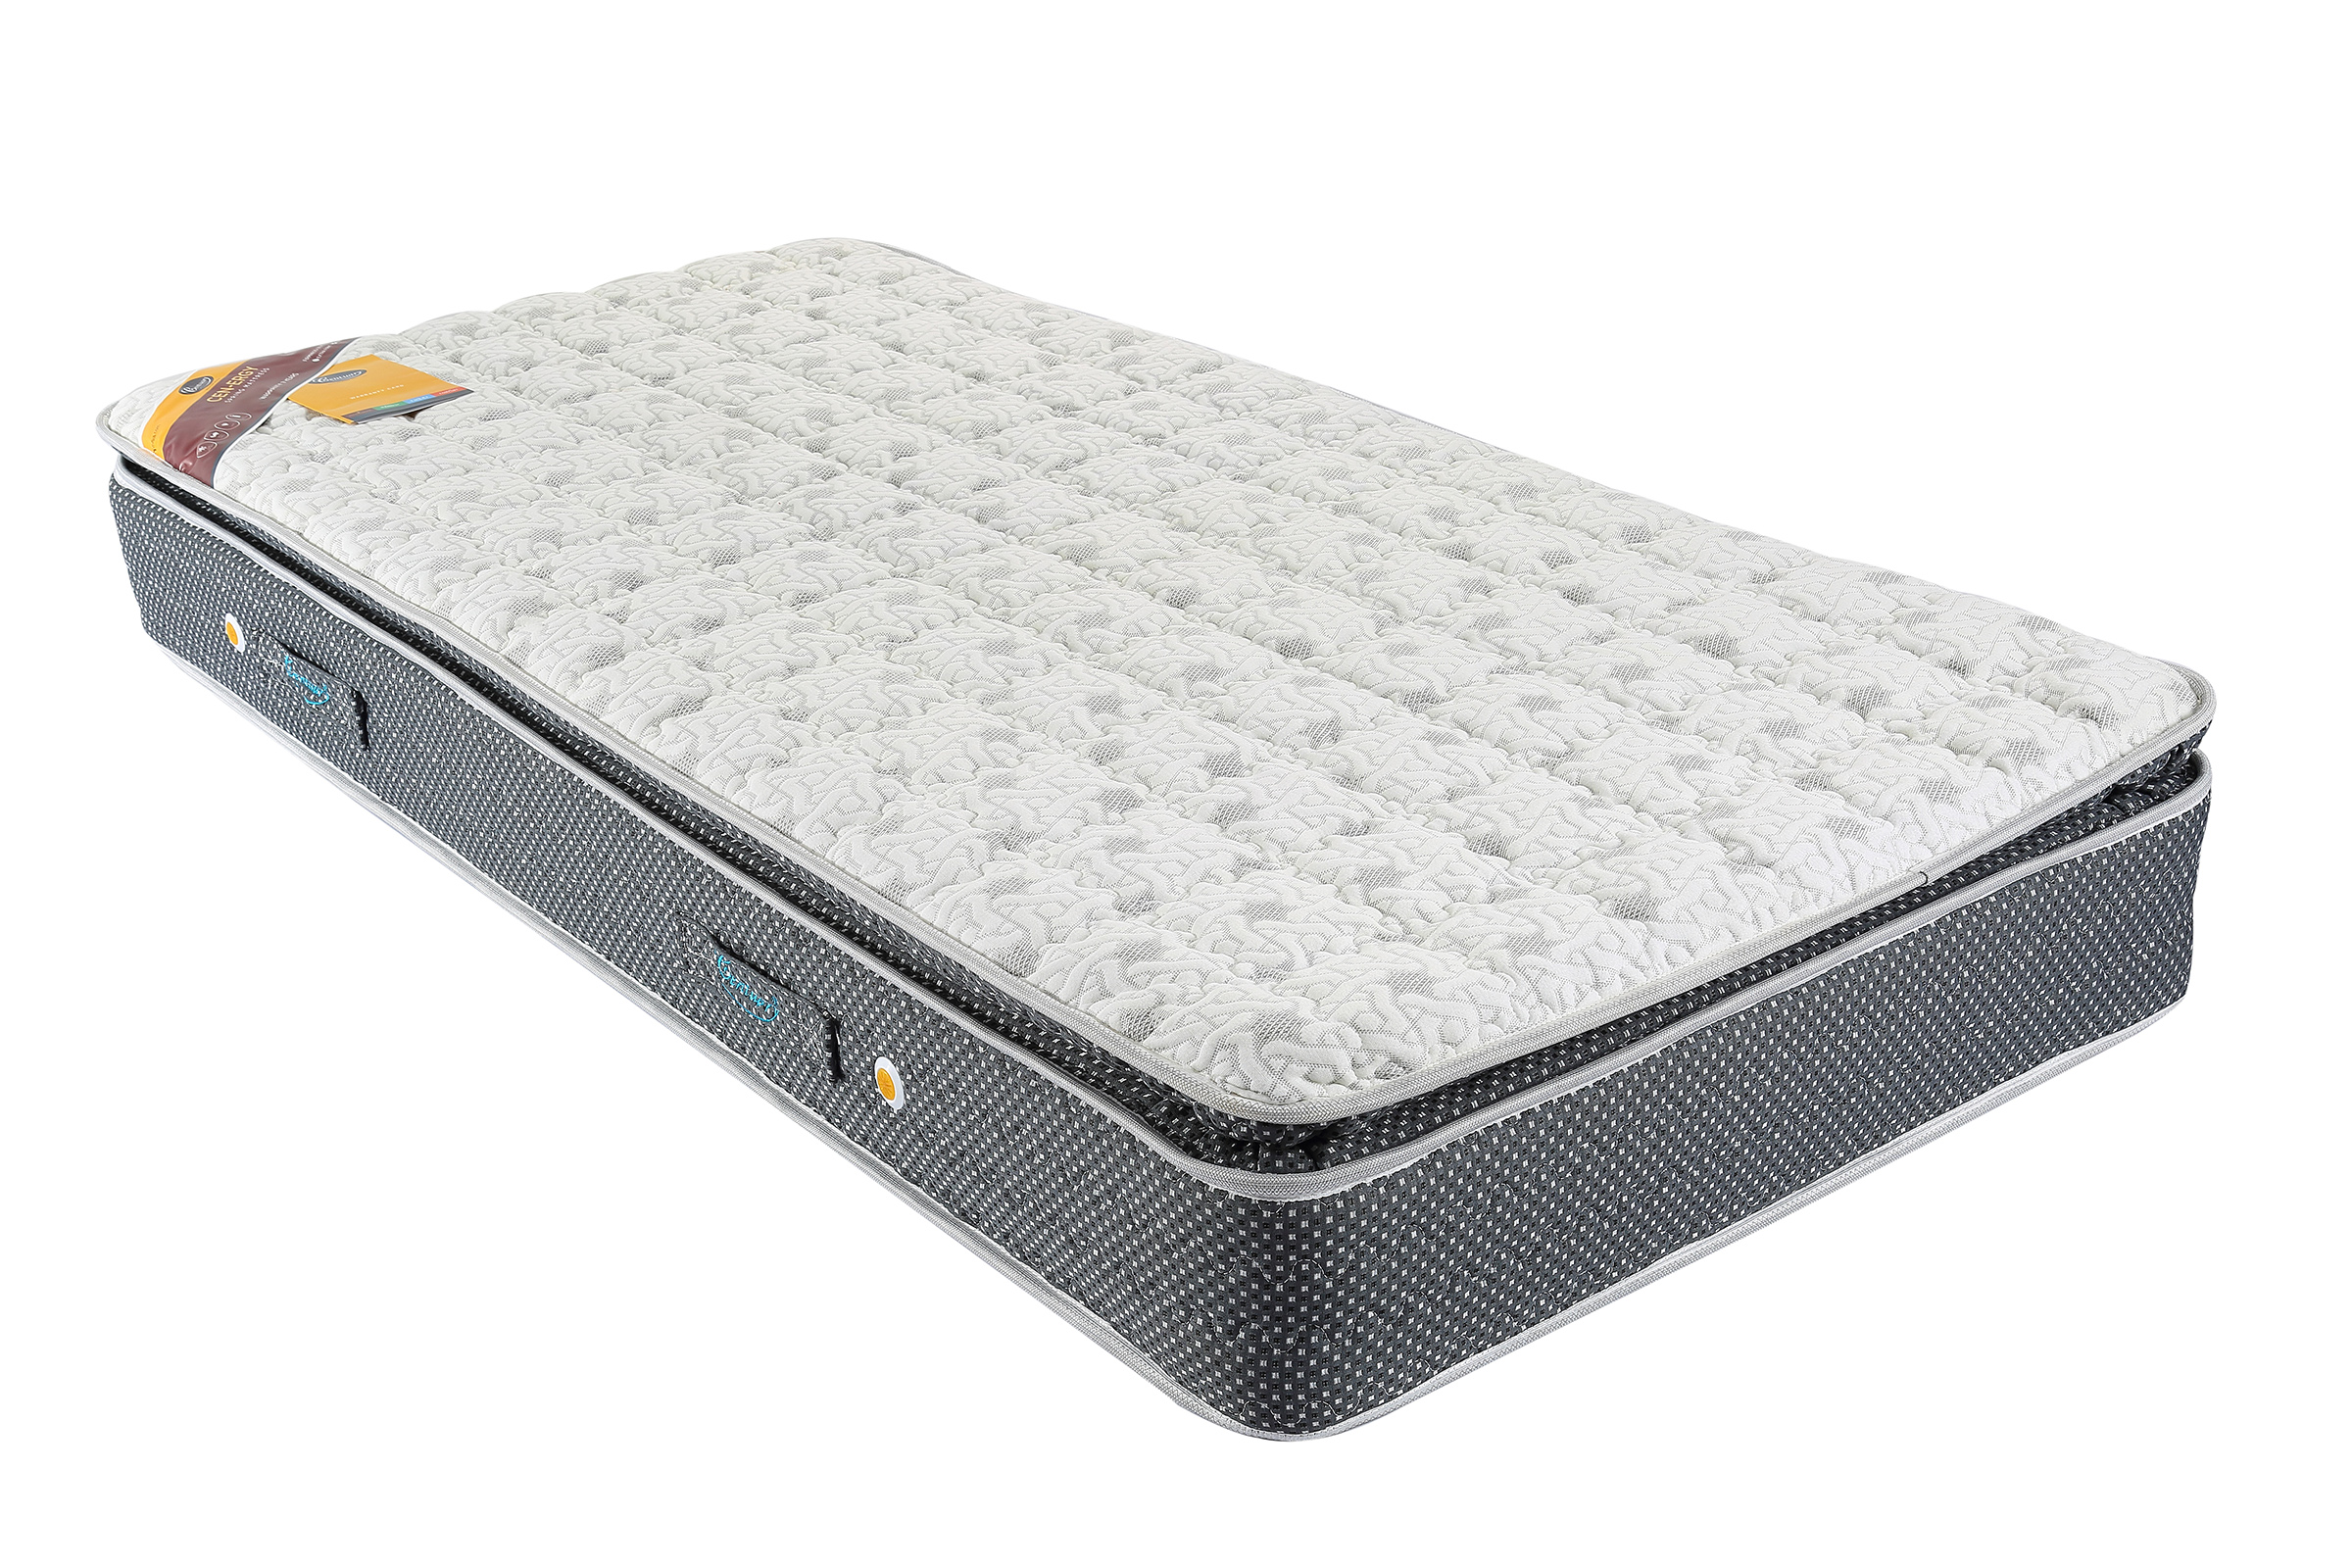 centuary turbo sleep mattress